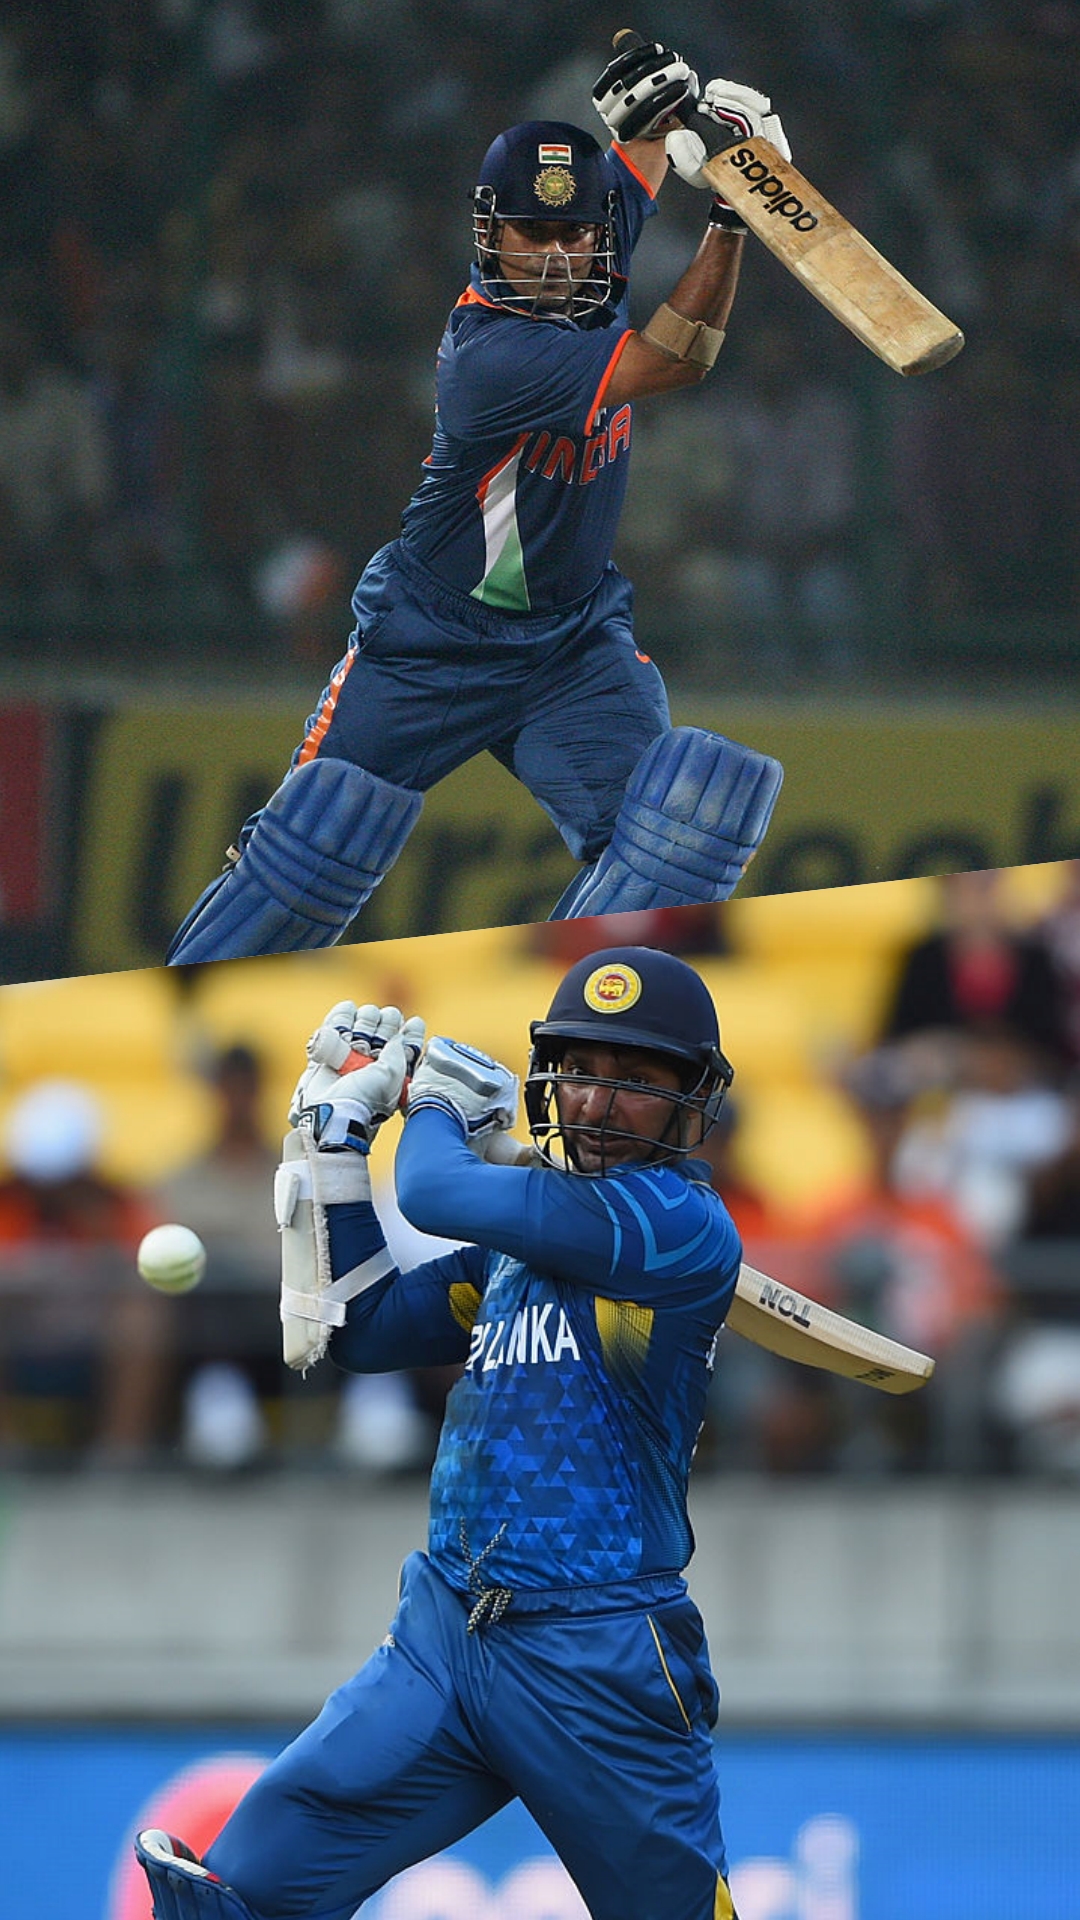 इंटरनेशनल क्रिकेट में सर्वाधिक चौके लगाने वाले टॉप 5 बल्लेबाज, दो भारतीय भी शामिल